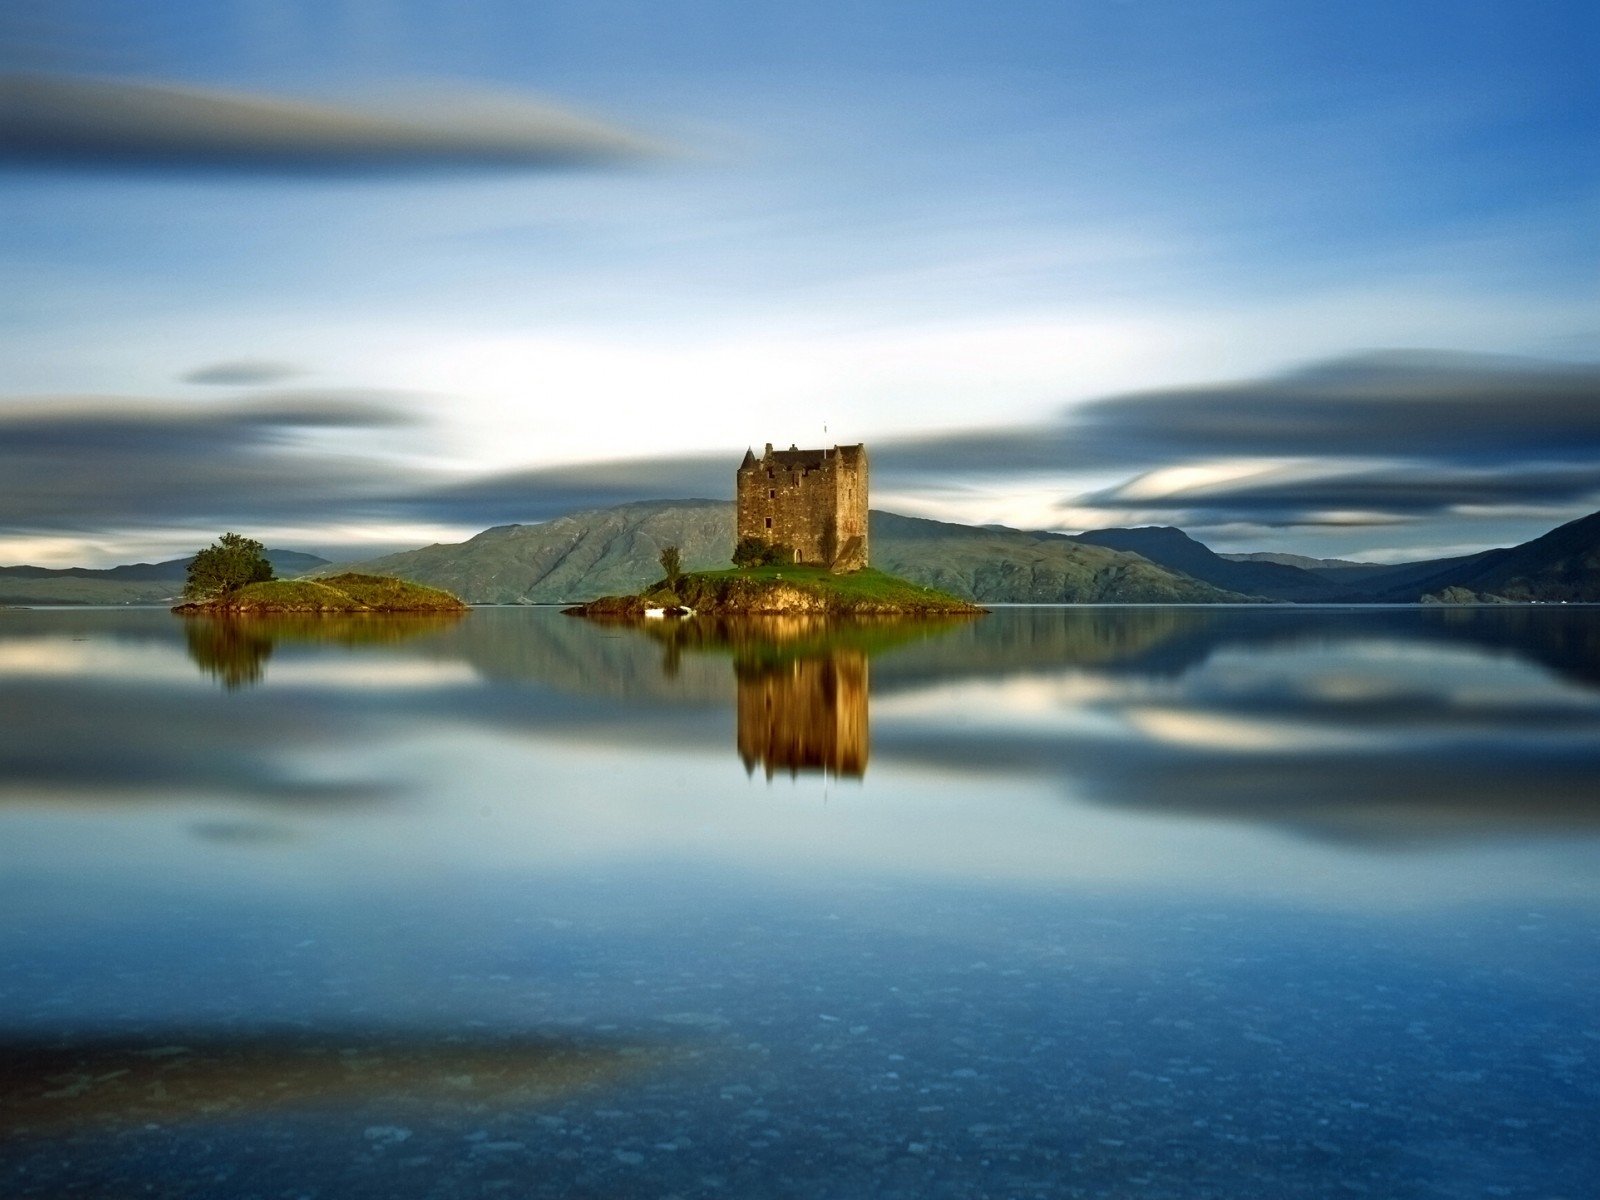 Castle Stalker Scotland for 1600 x 1200 resolution